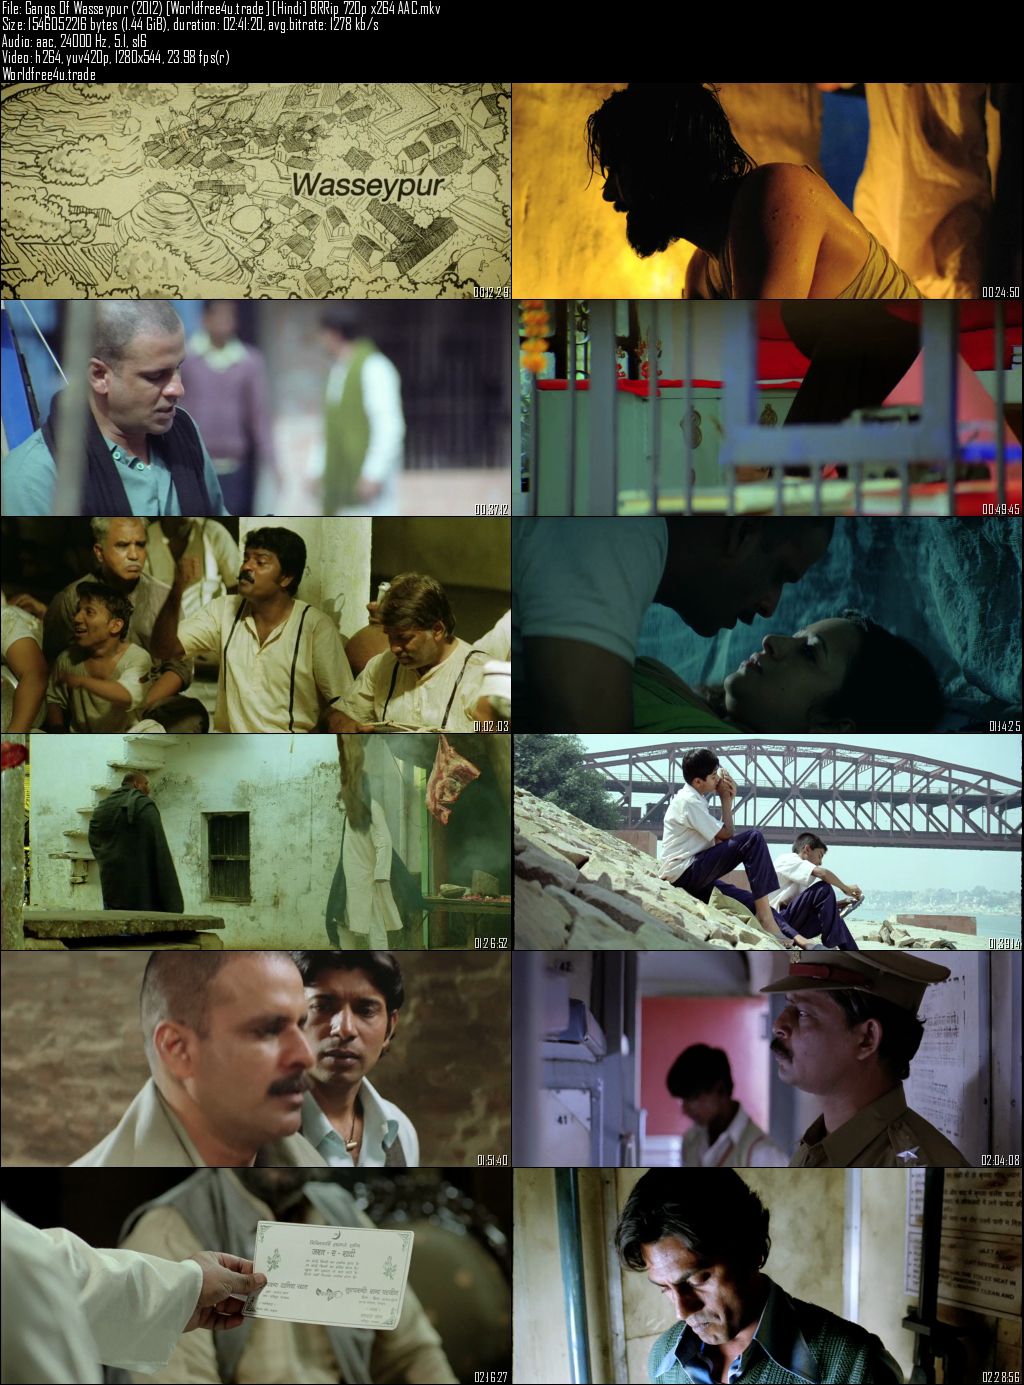 gangs of wasseypur 2 full movie hd 720p